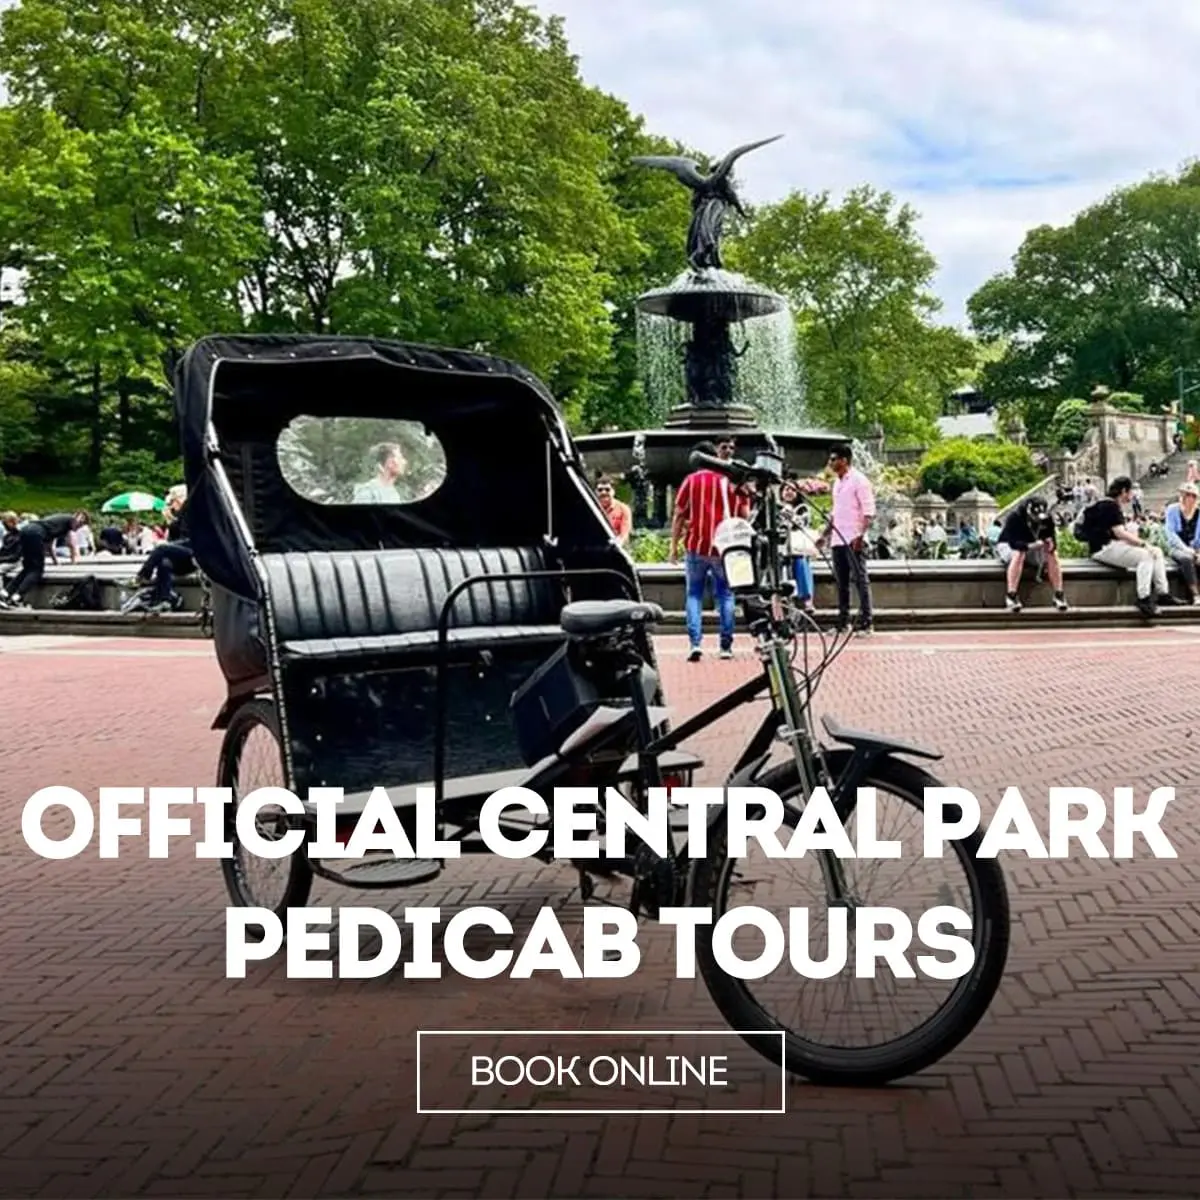 Official Central Park Pedicab Tours